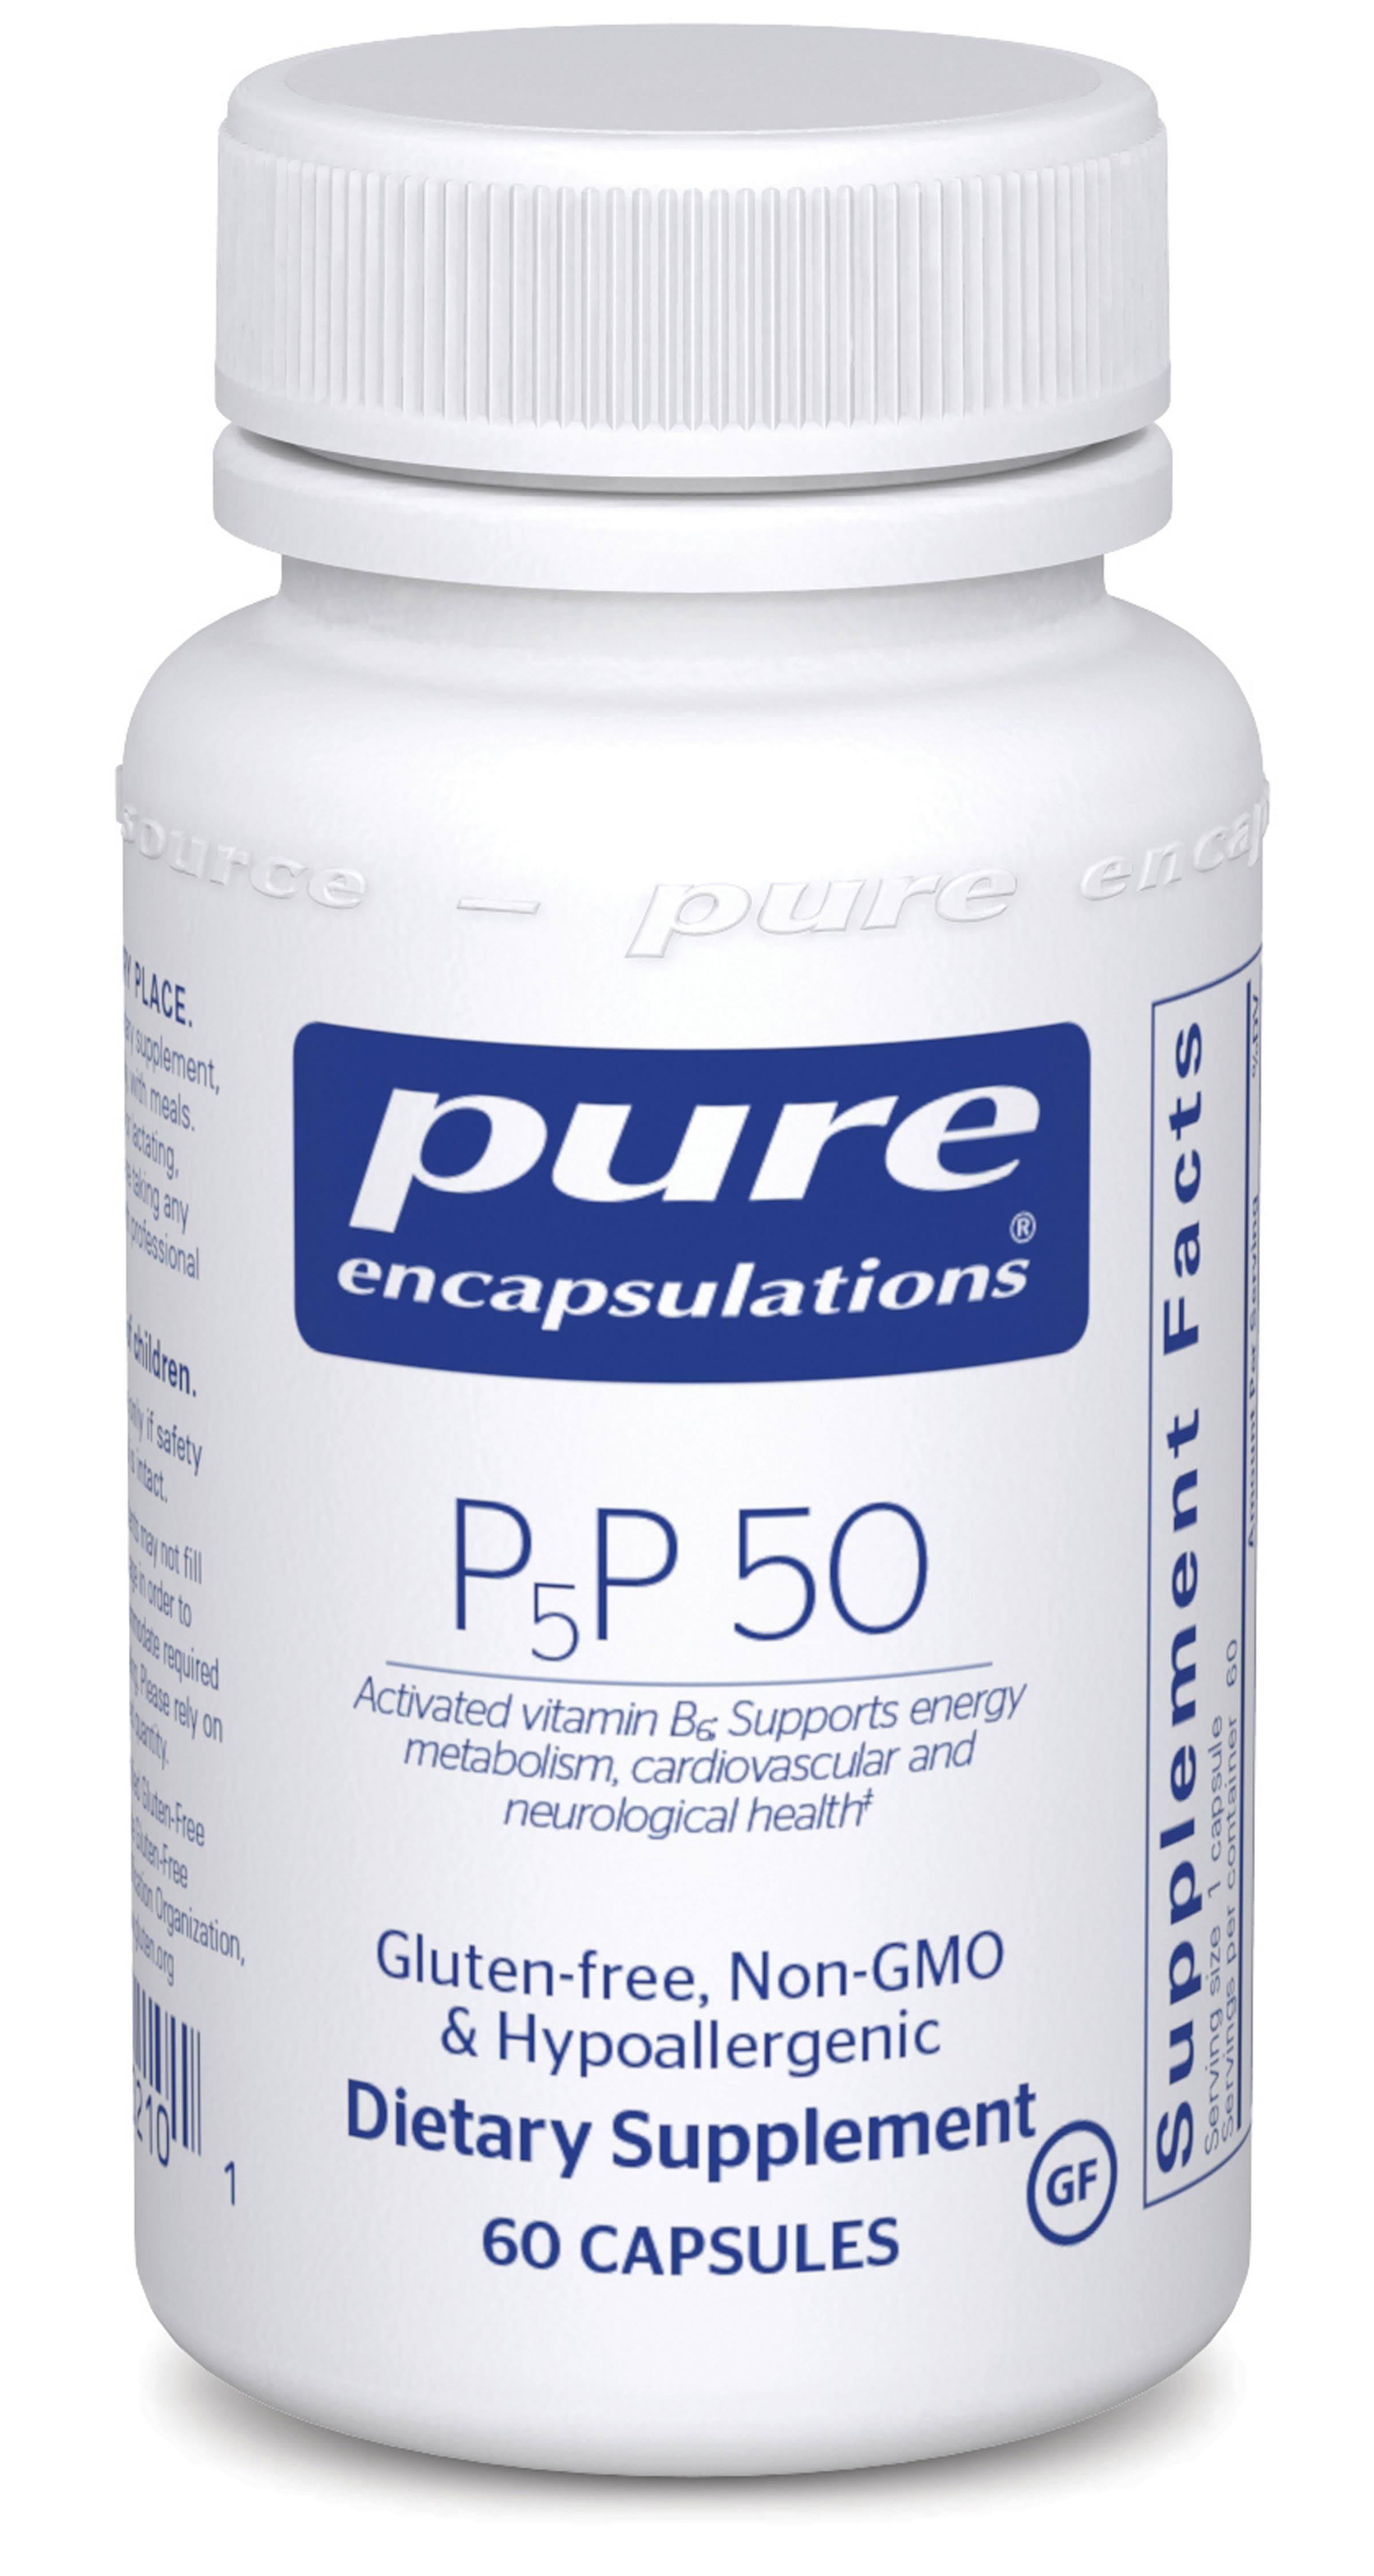 Pure Encapsulations P5p 50 Activated B6 Supplement - 60 Capsules